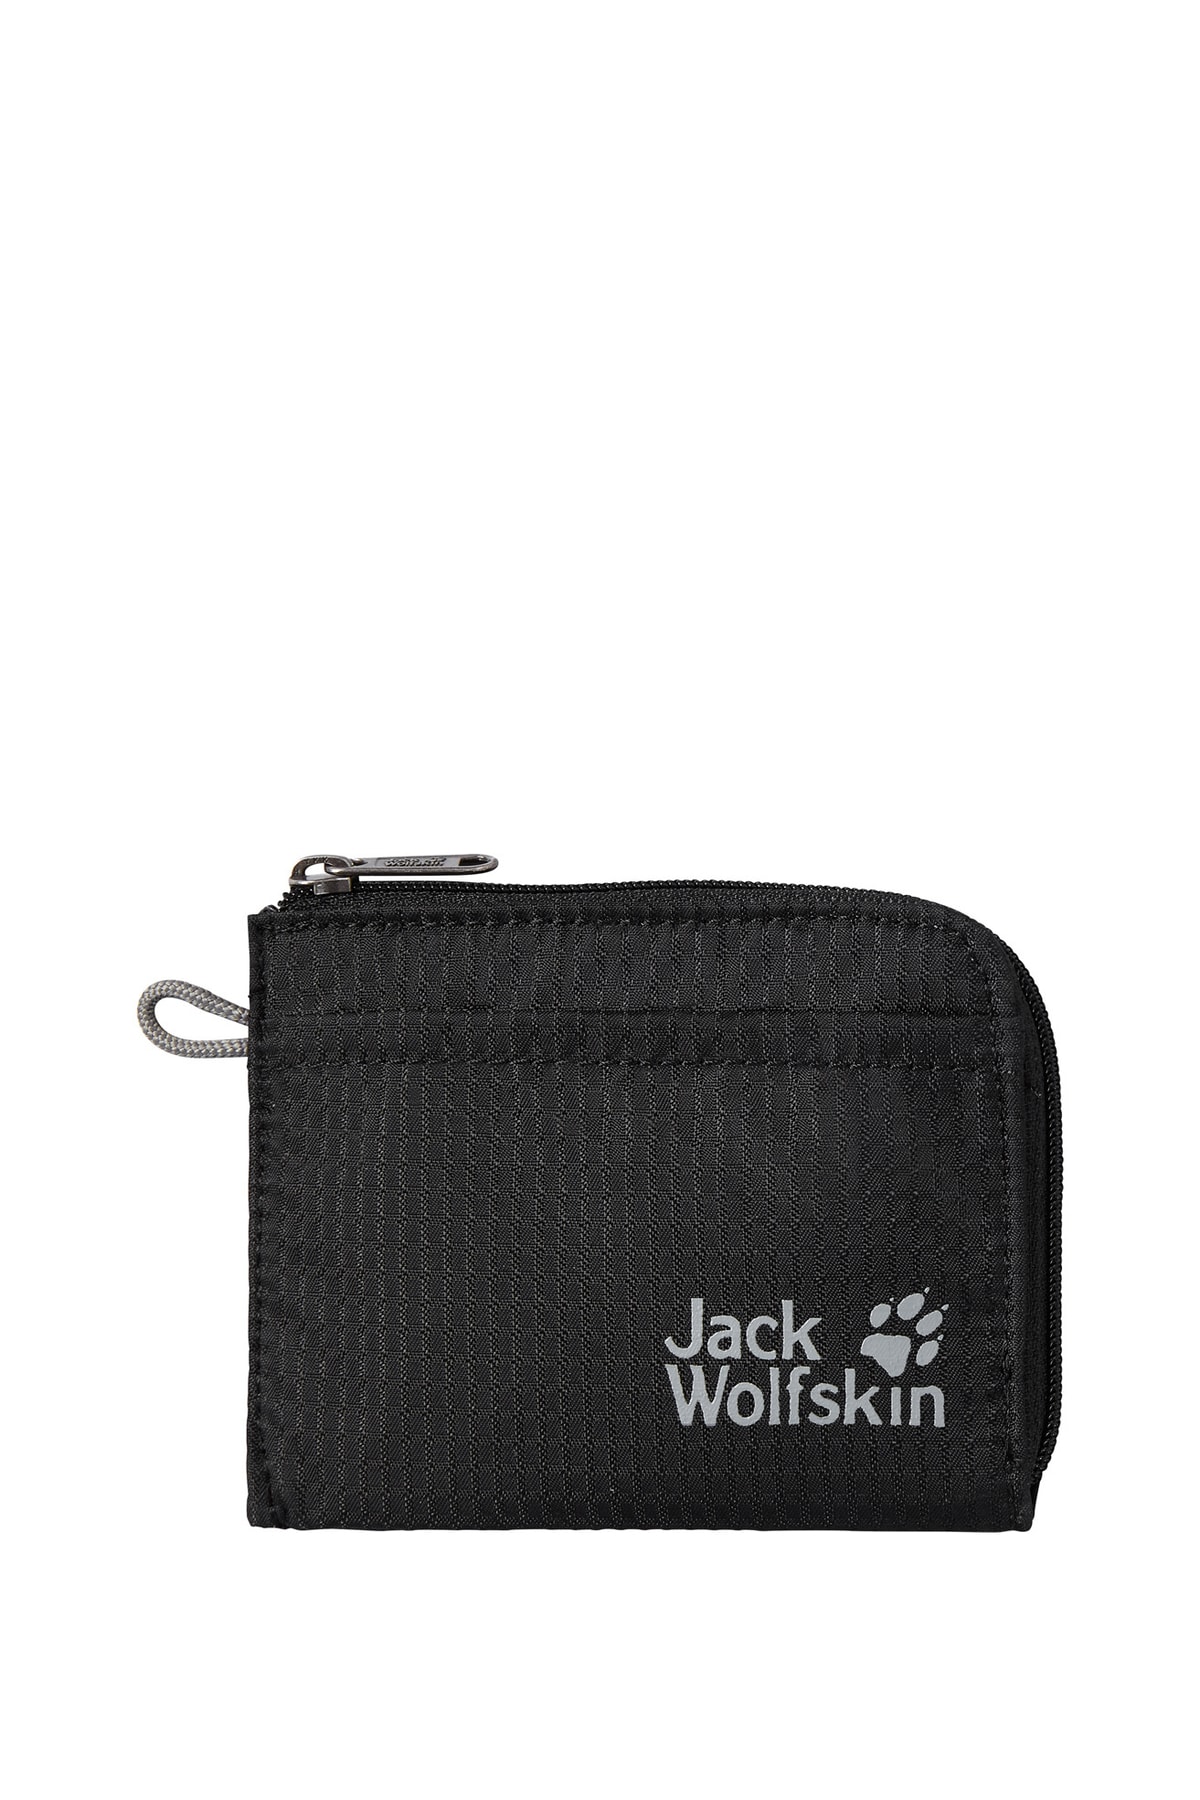 Jack Wolfskin 8006802-6000 Kariba Air Siyah Unisex Cüzdan